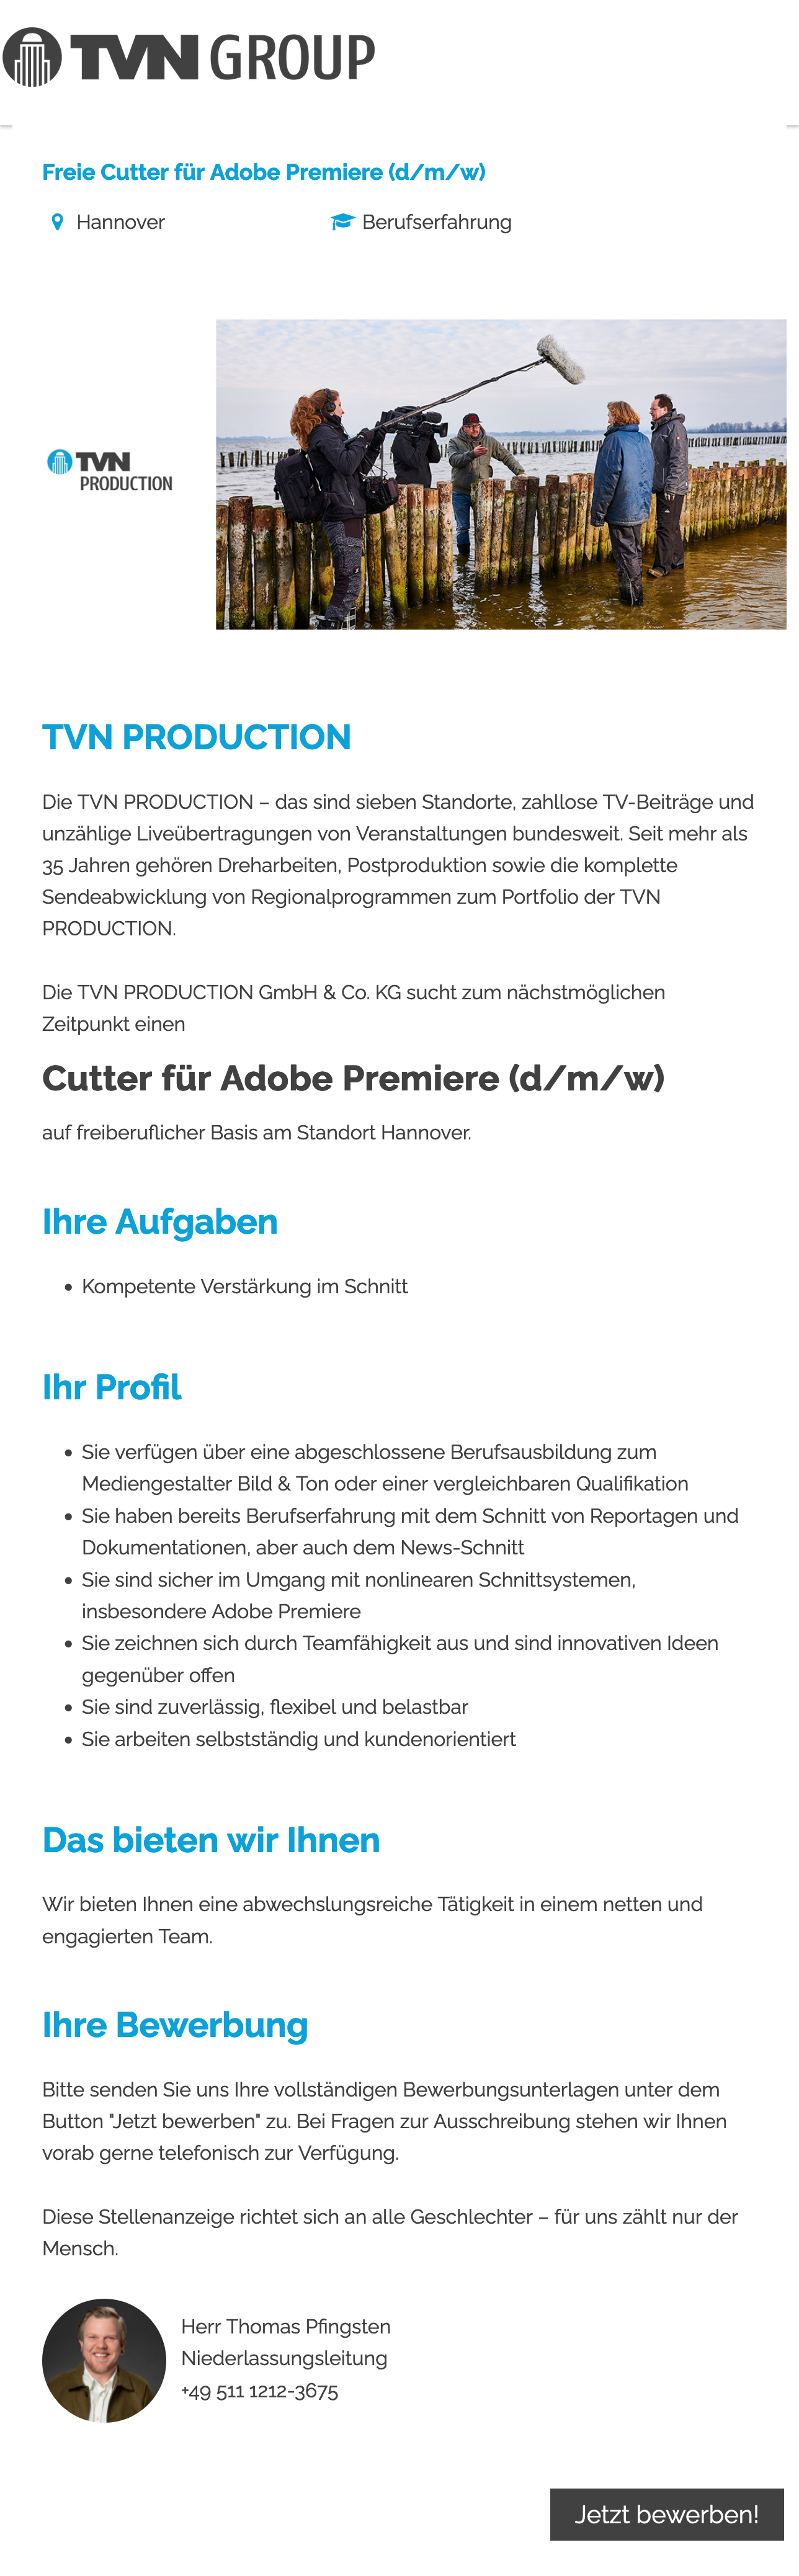 Freie Cutter (d/m/w) für Adobe Premiere